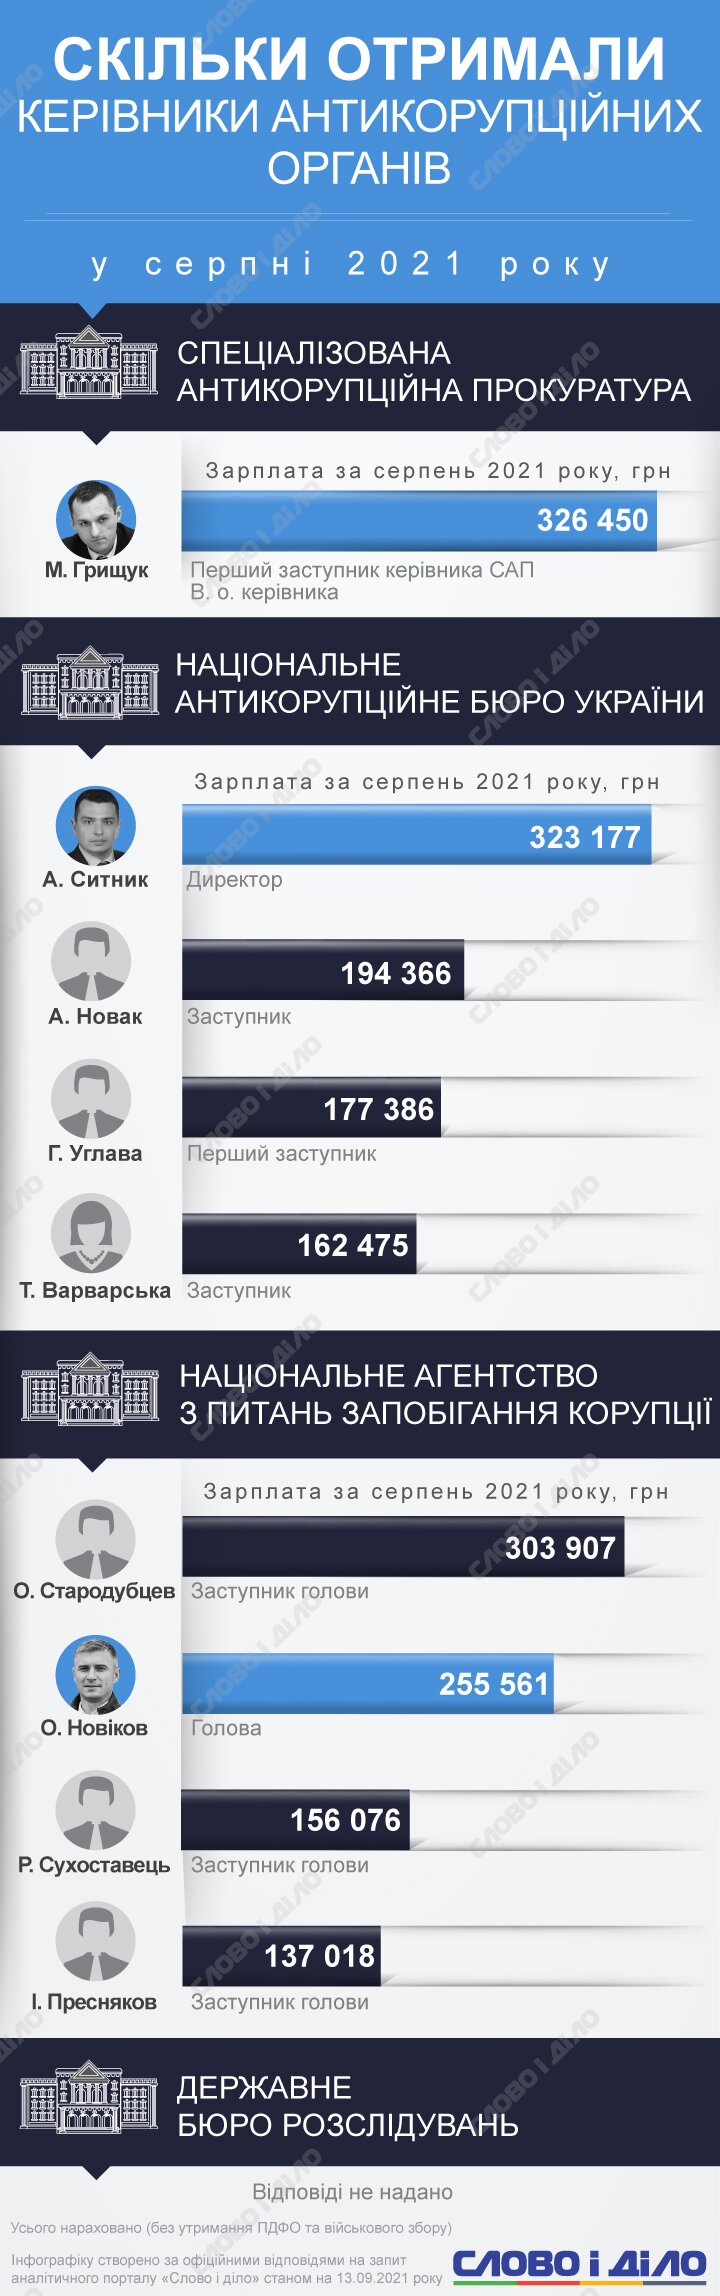 У и.о. руководителя Специализированной антикоррупционной прокуратуры Максима Грищука была самая высокая зарплата в августе.